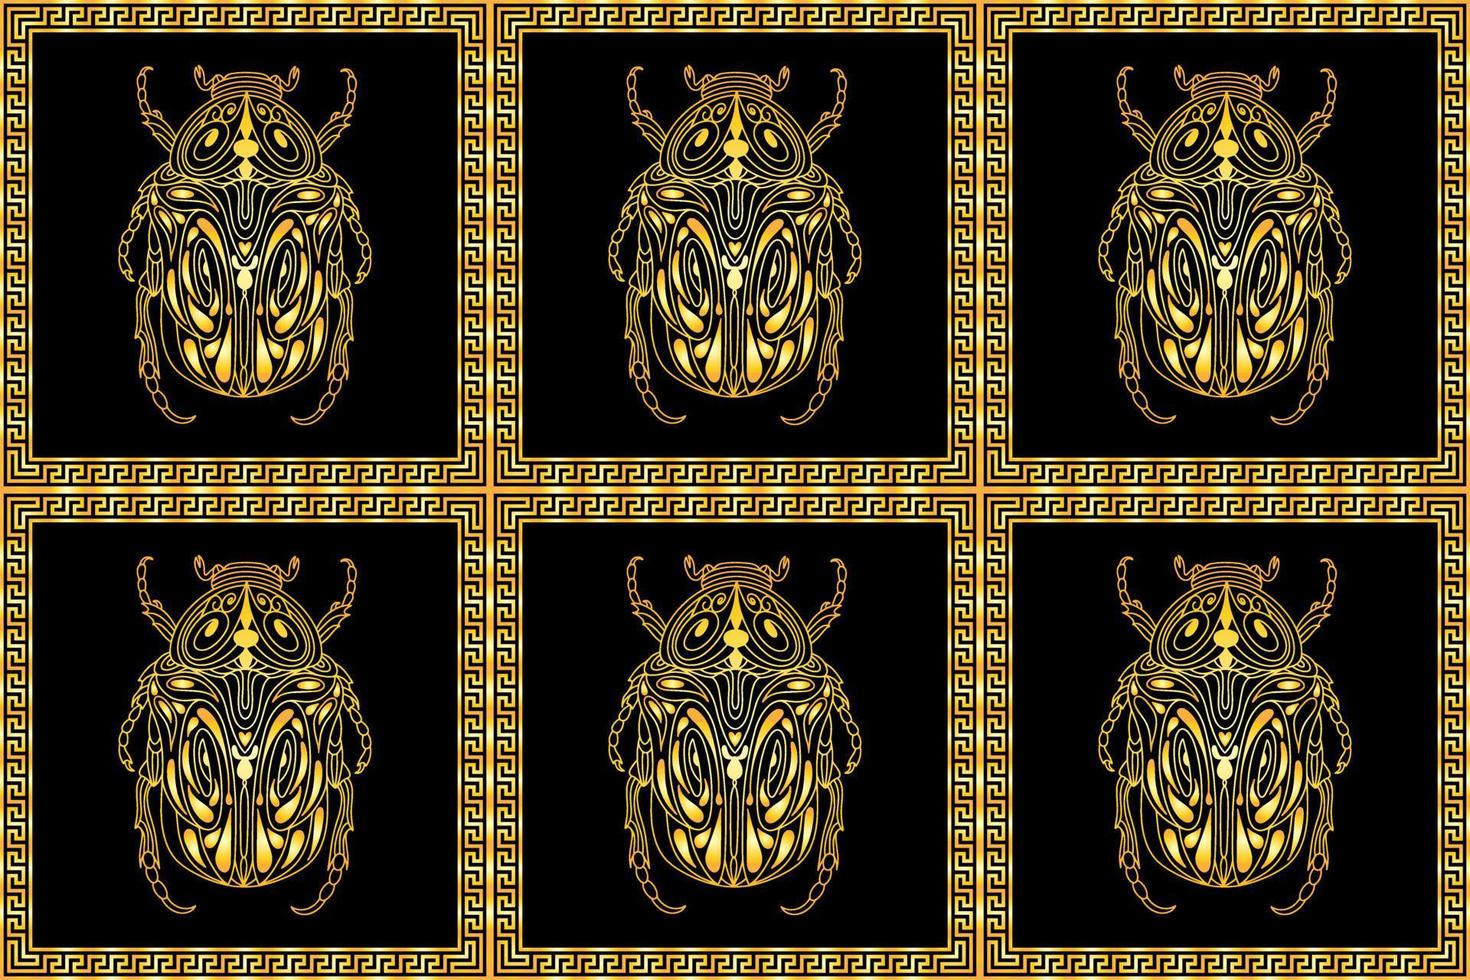 padrão perfeito com besouros dourados em um ornamento retangular no estilo grego vetor